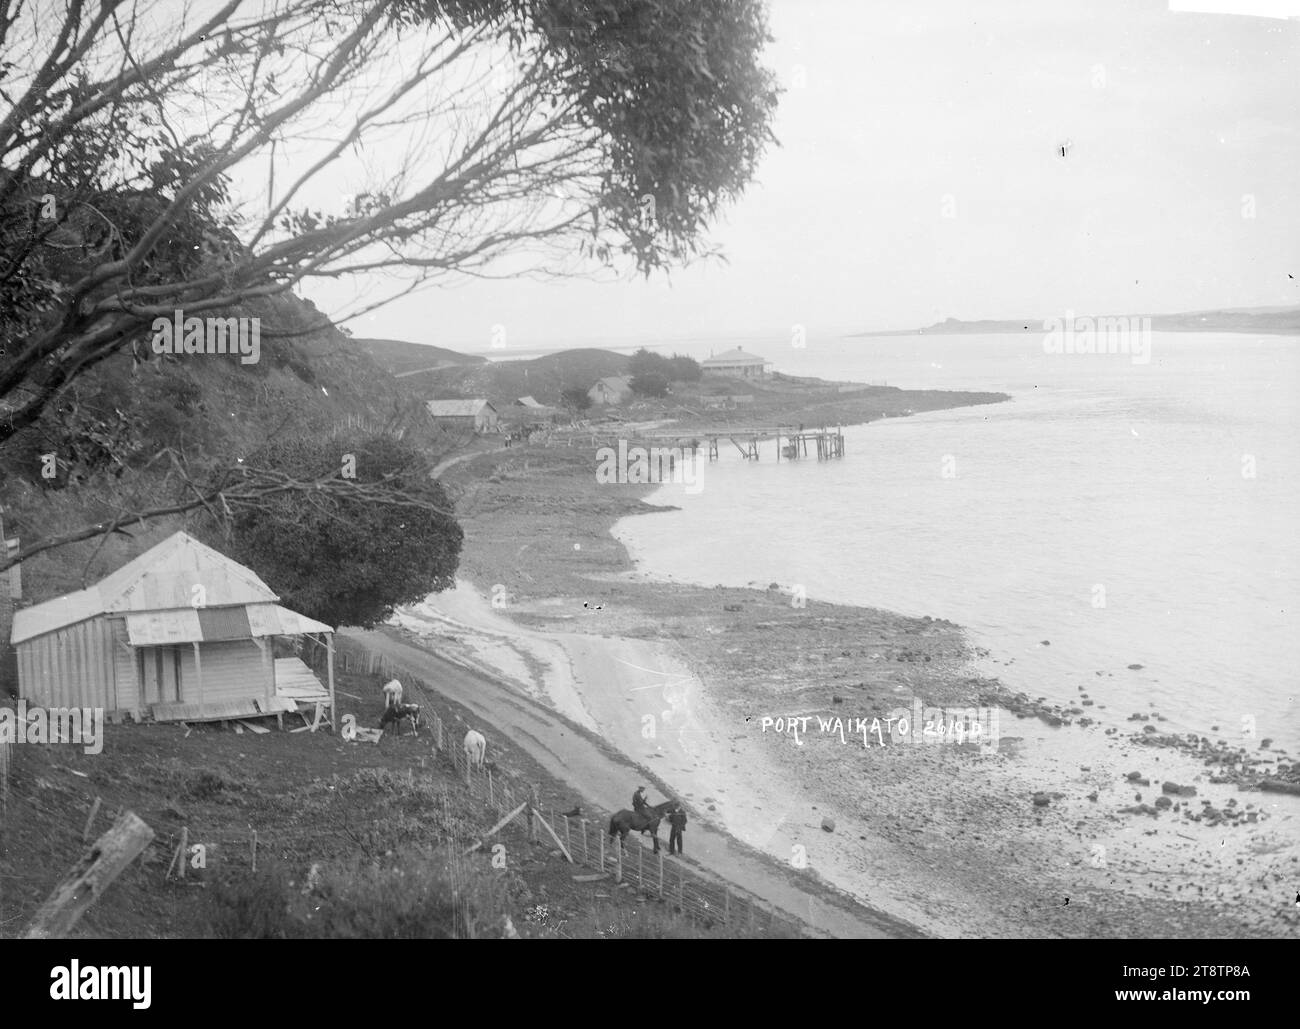 Scena sul lungomare di Port Waikato, scena sul lungomare di Port Waikato, con spiaggia, strada, molo, edifici, e una casa in primo piano a destra. P tra 1910 e 1930 Foto Stock